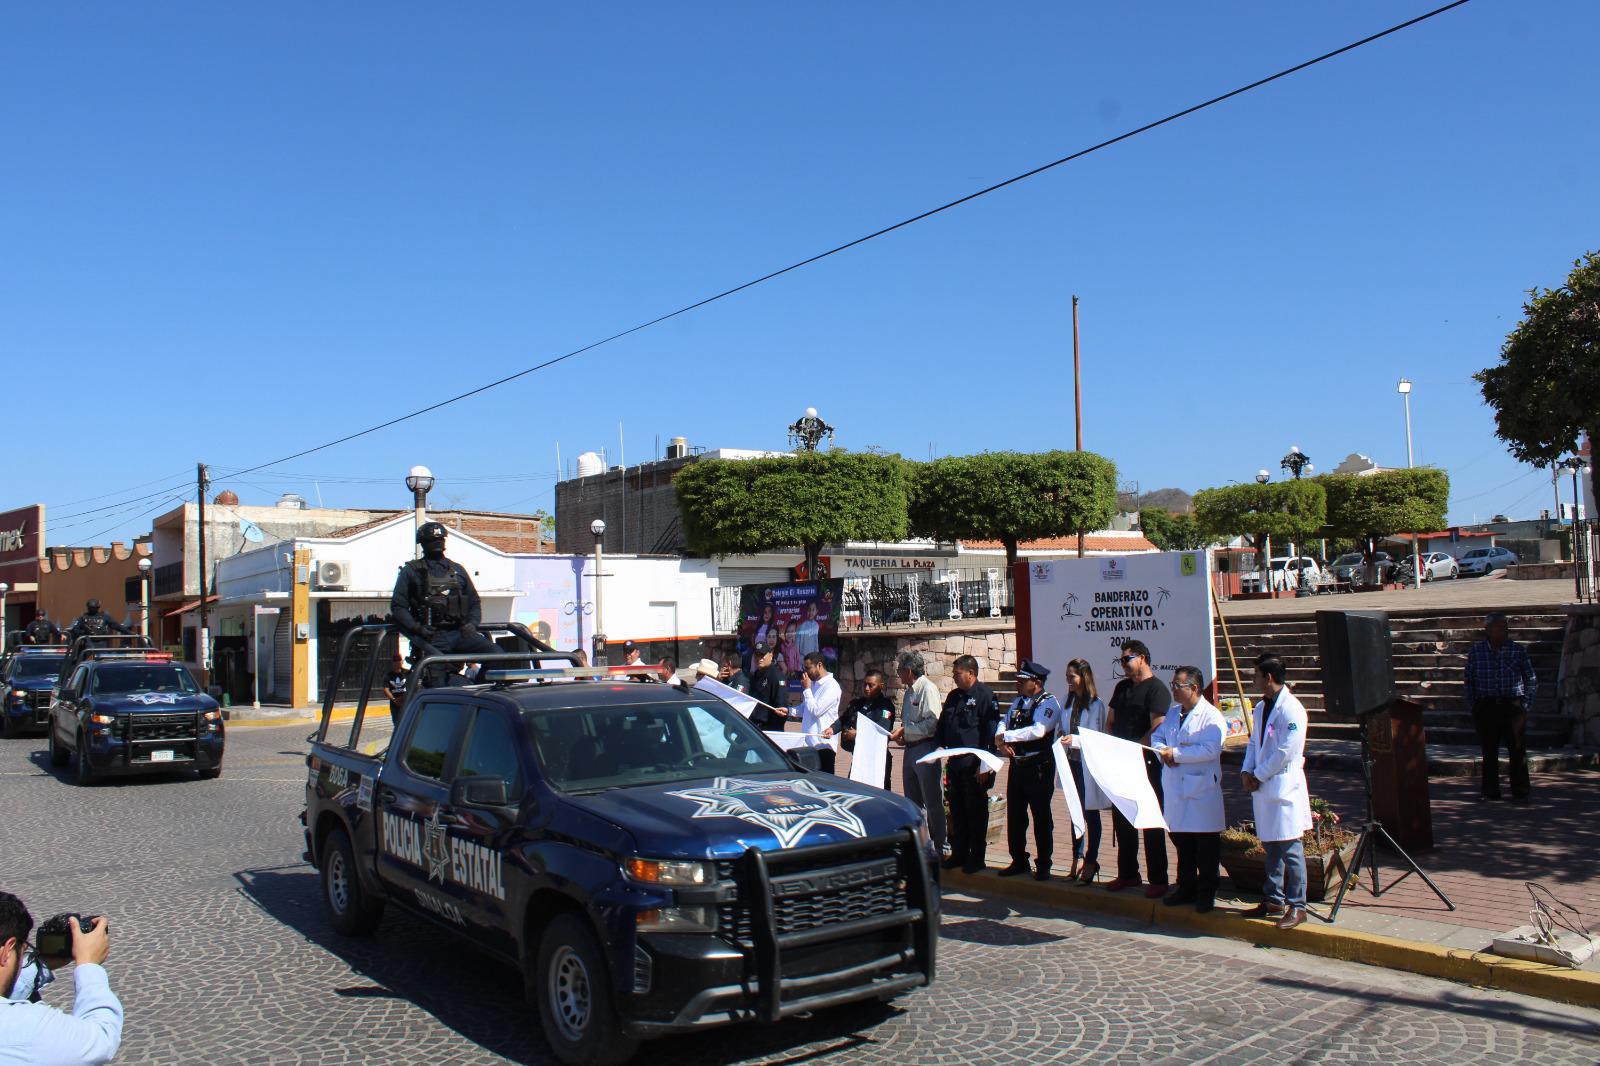 $!Ponen en marcha en Rosario operativo de seguridad por Semana Santa